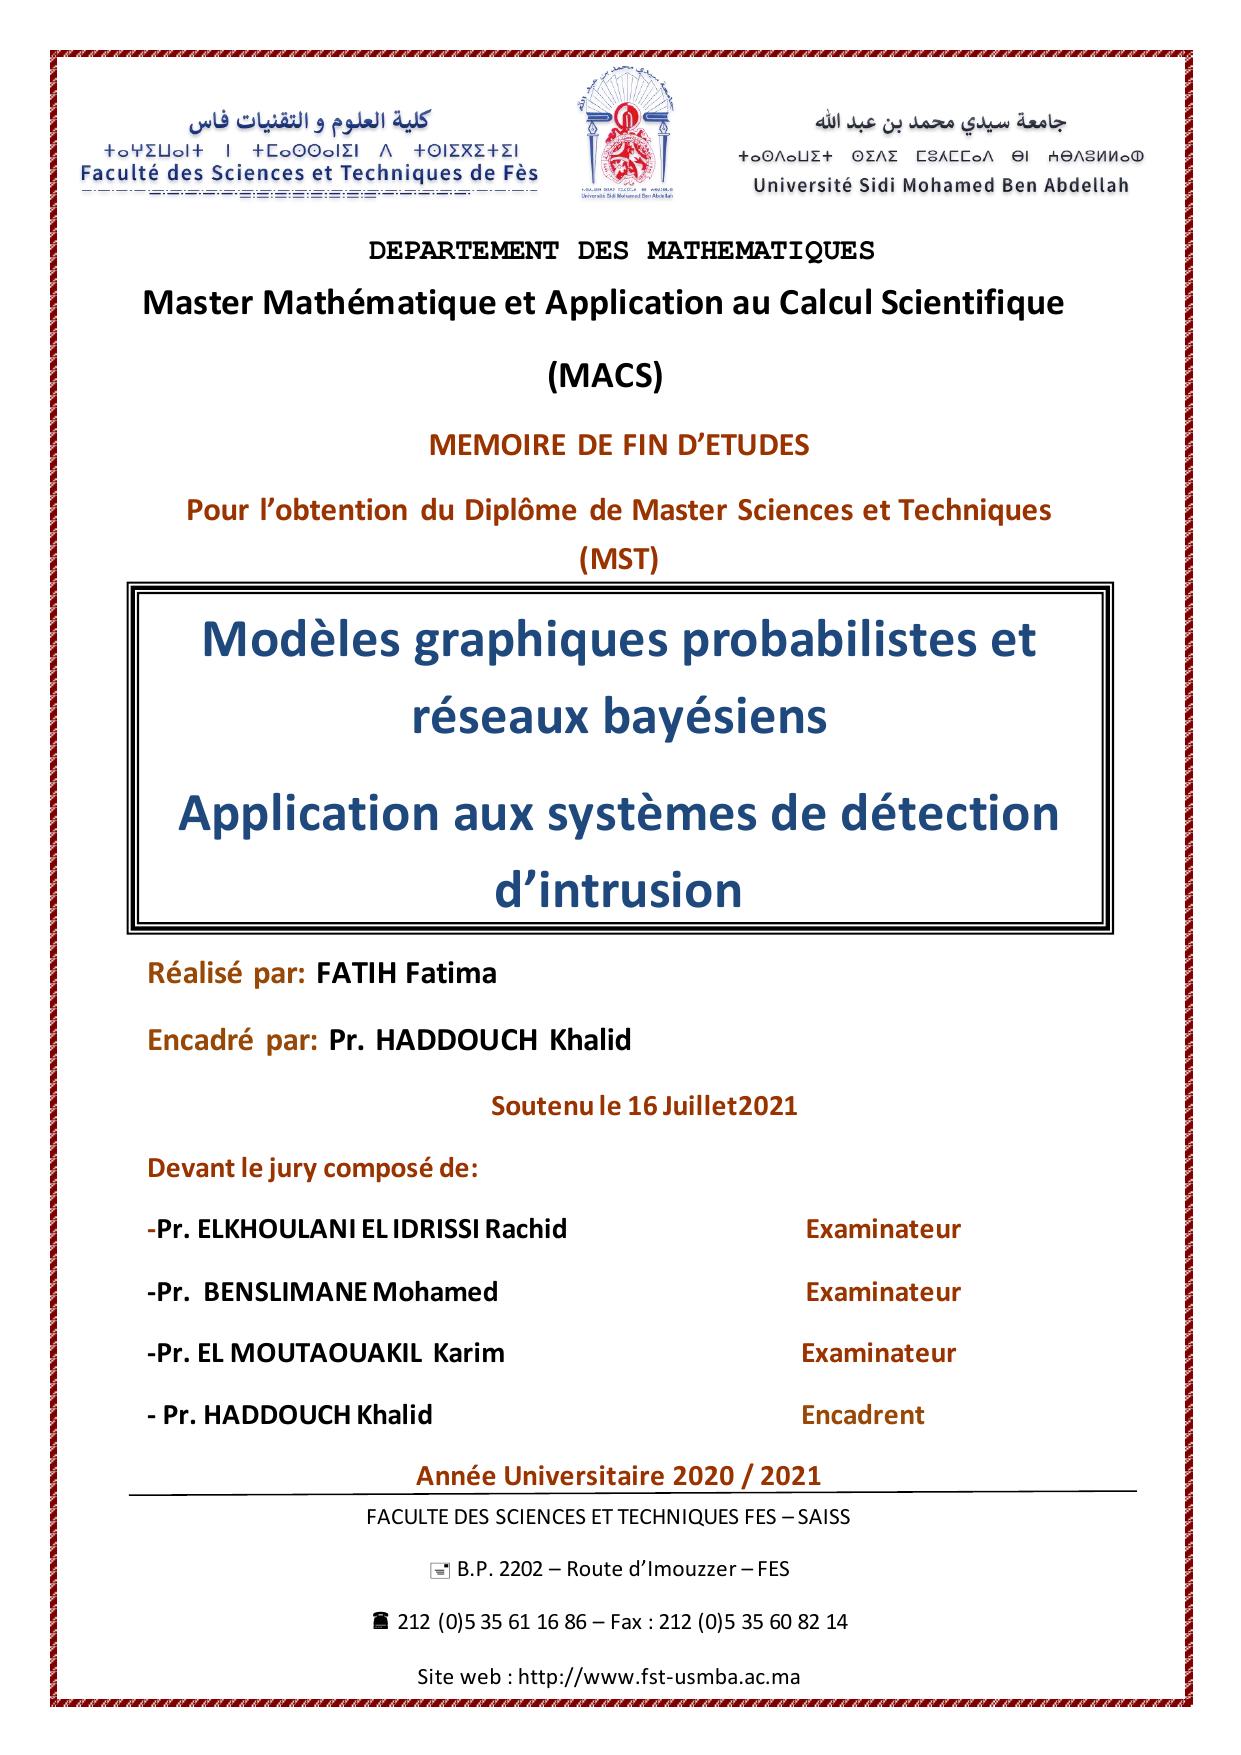 Modèles graphiques probabilistes et réseaux bayésiens Application aux systèmes de détection d’intrusion